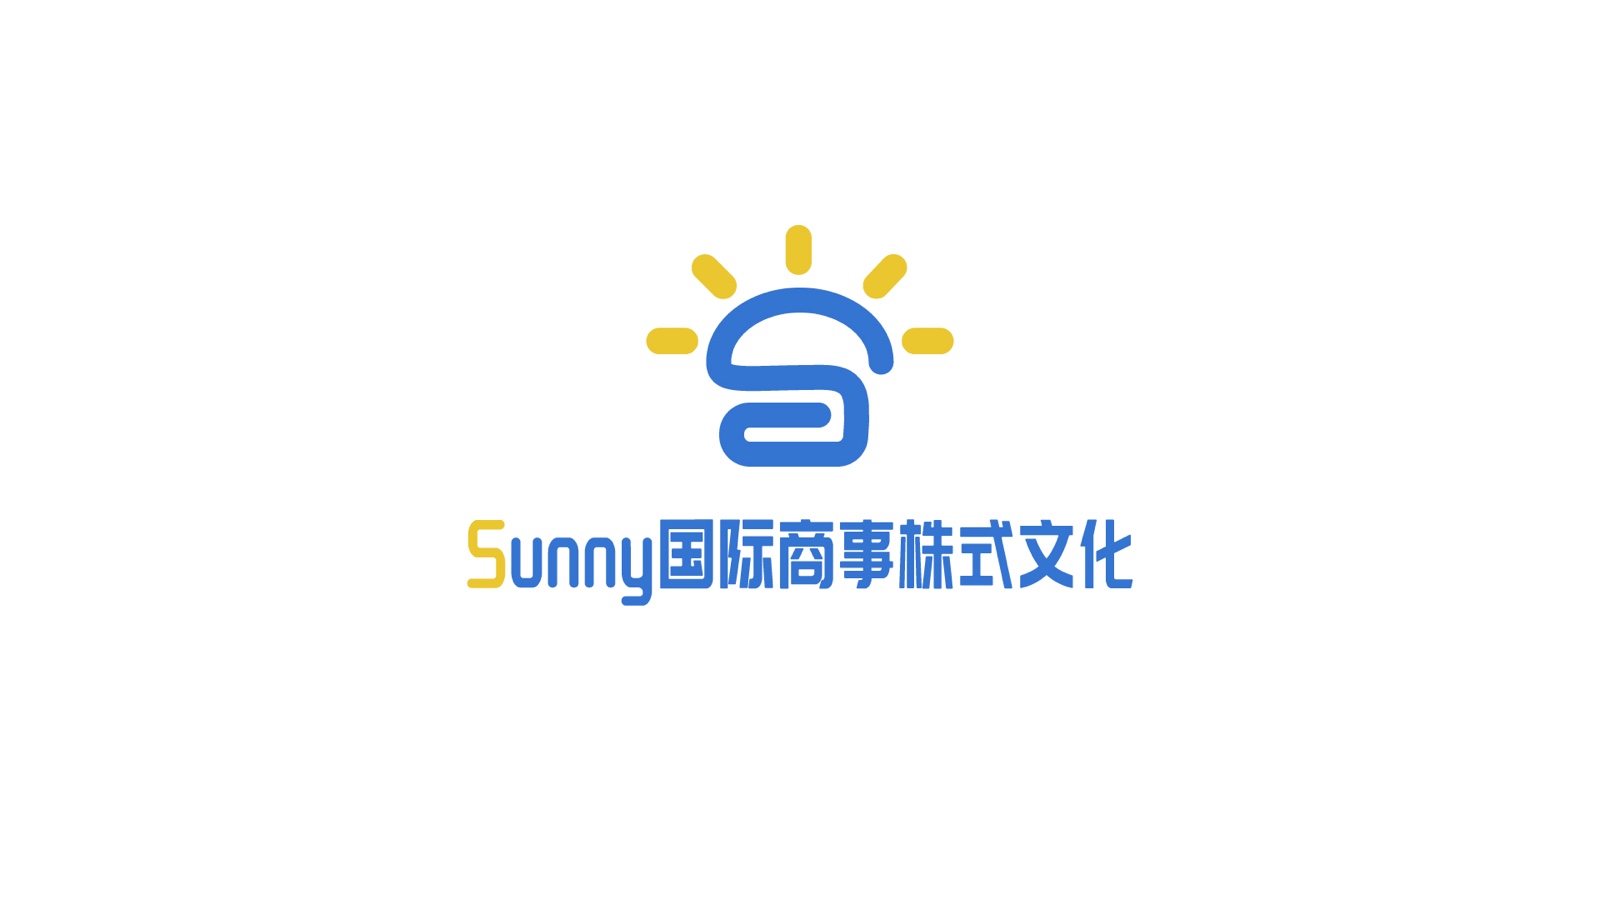 Sunny国际商事株式会社